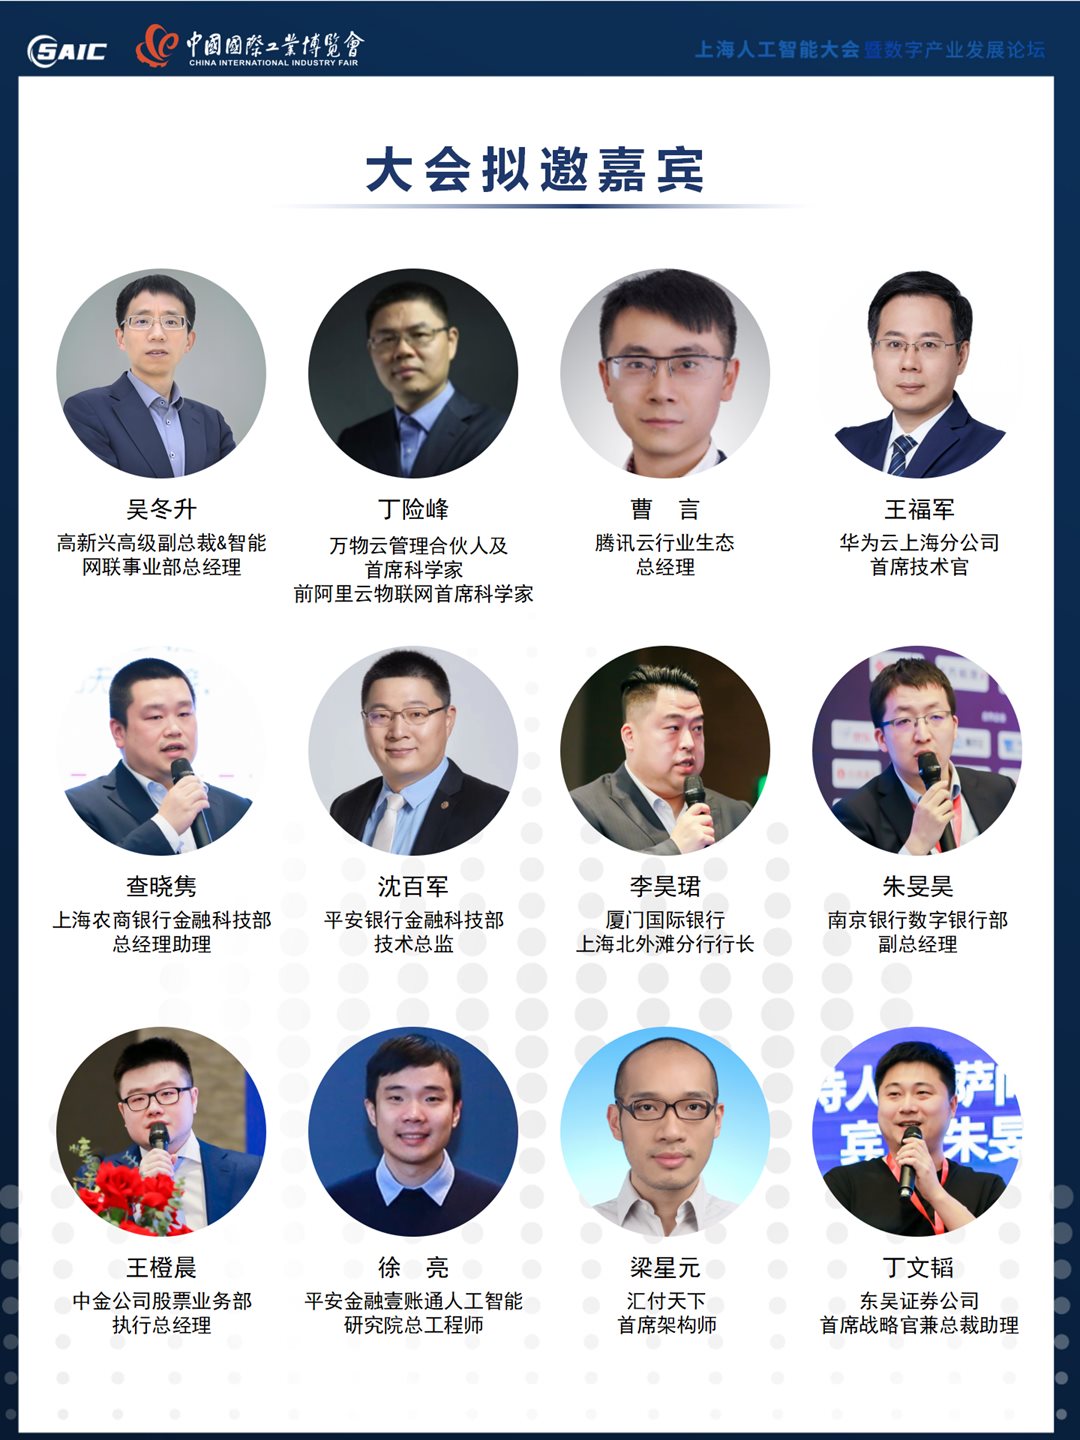 8th上海AI大会 大会合作方案 0517（对外）_05.png